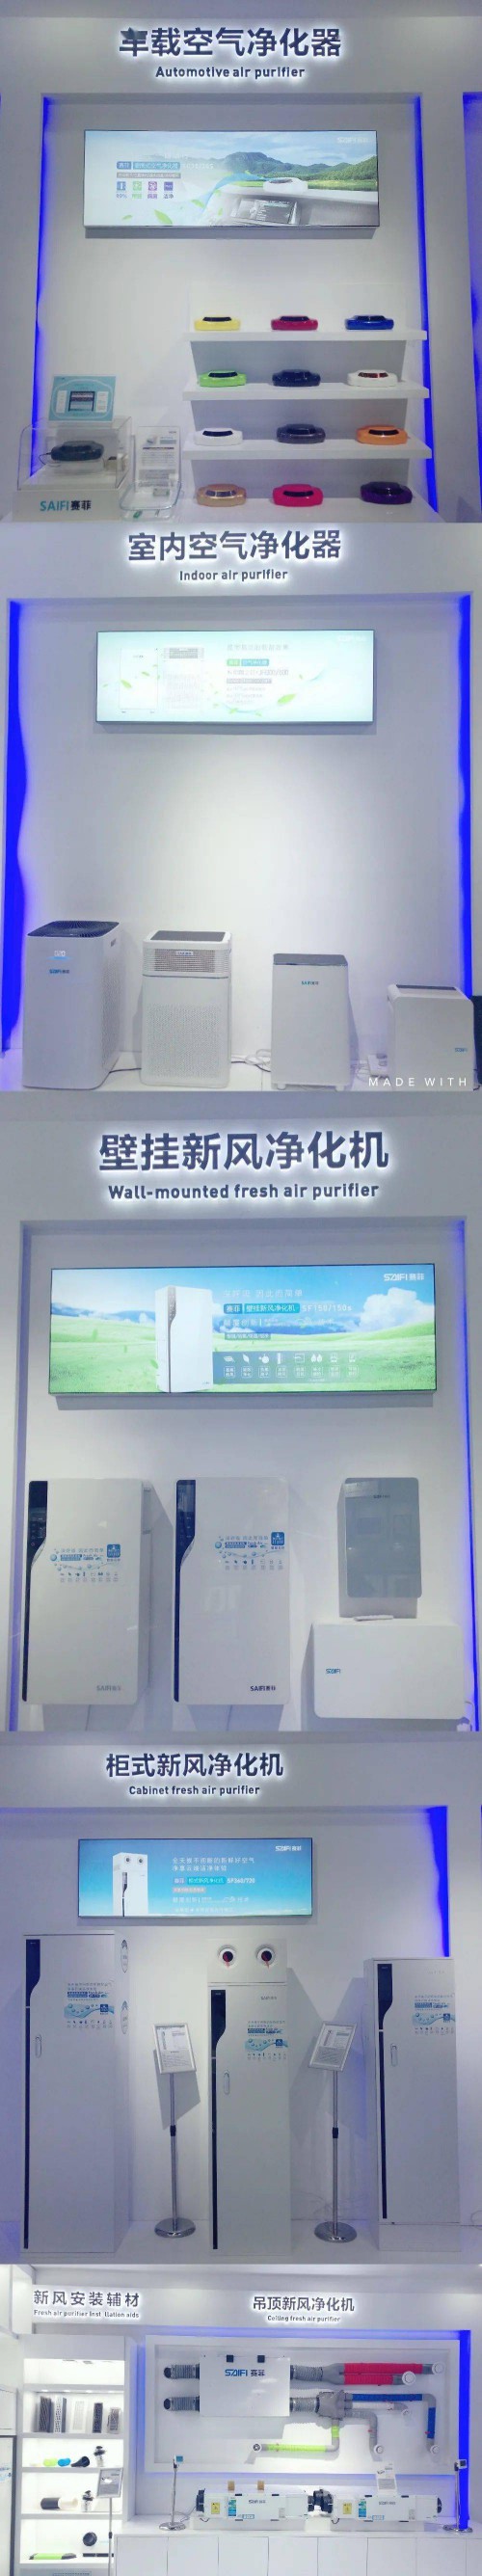 联盟走访 | 赛菲净化器：为营造中国好空气而努力 